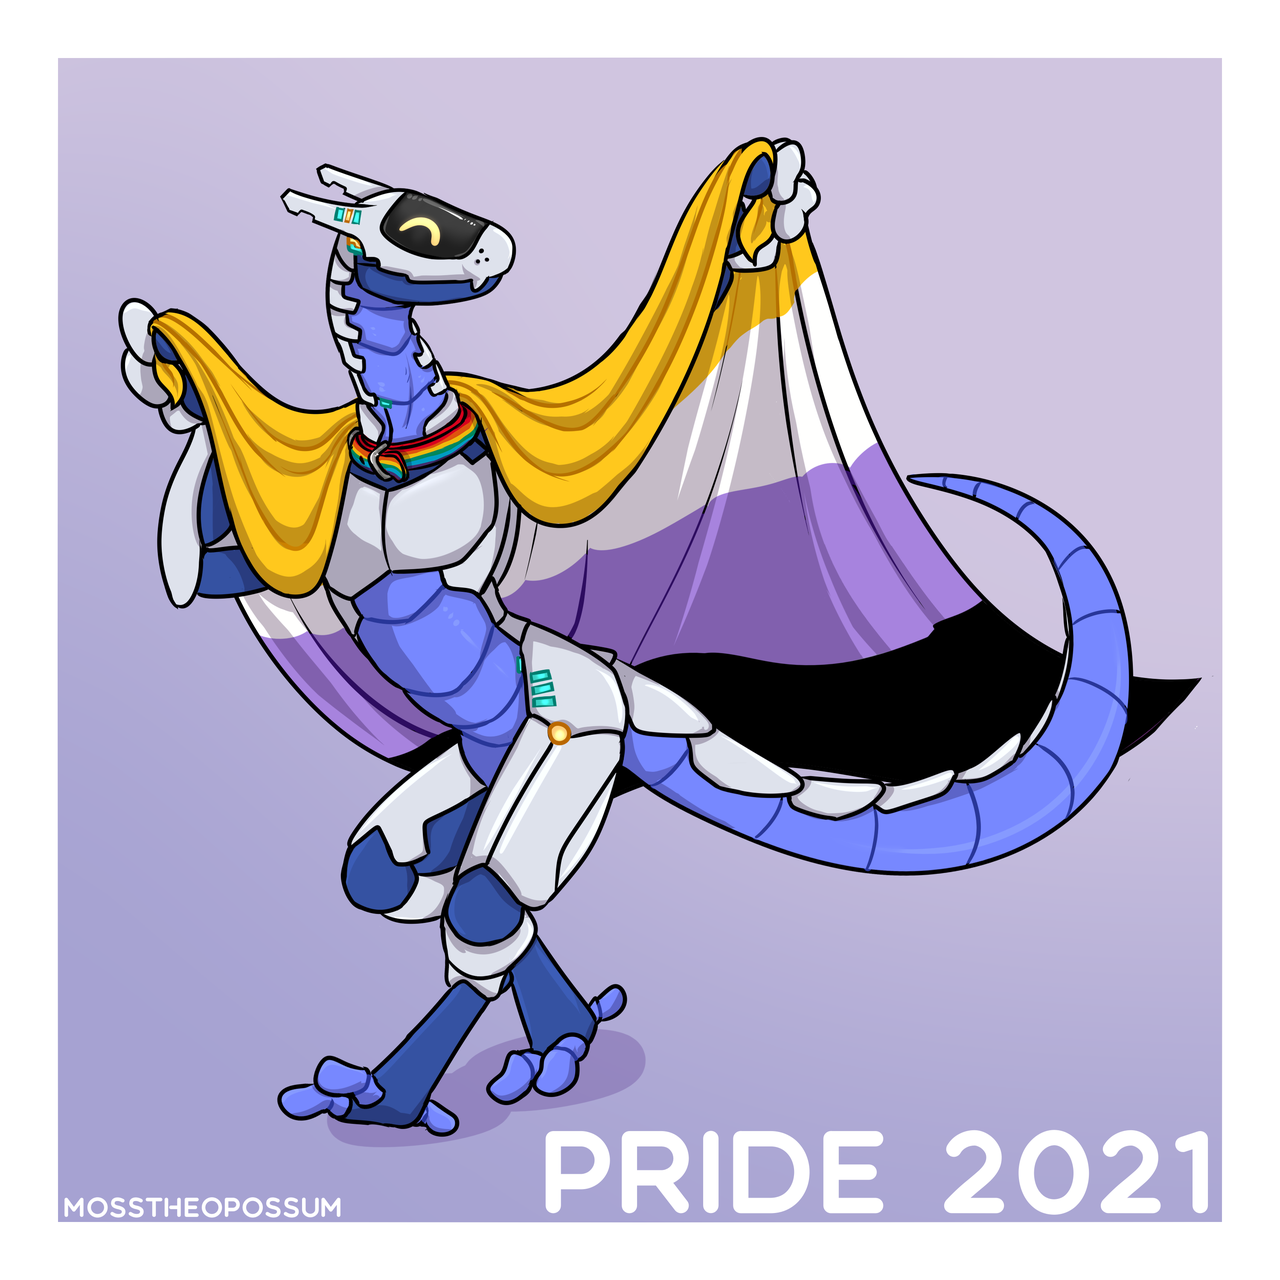 Non-binary pride